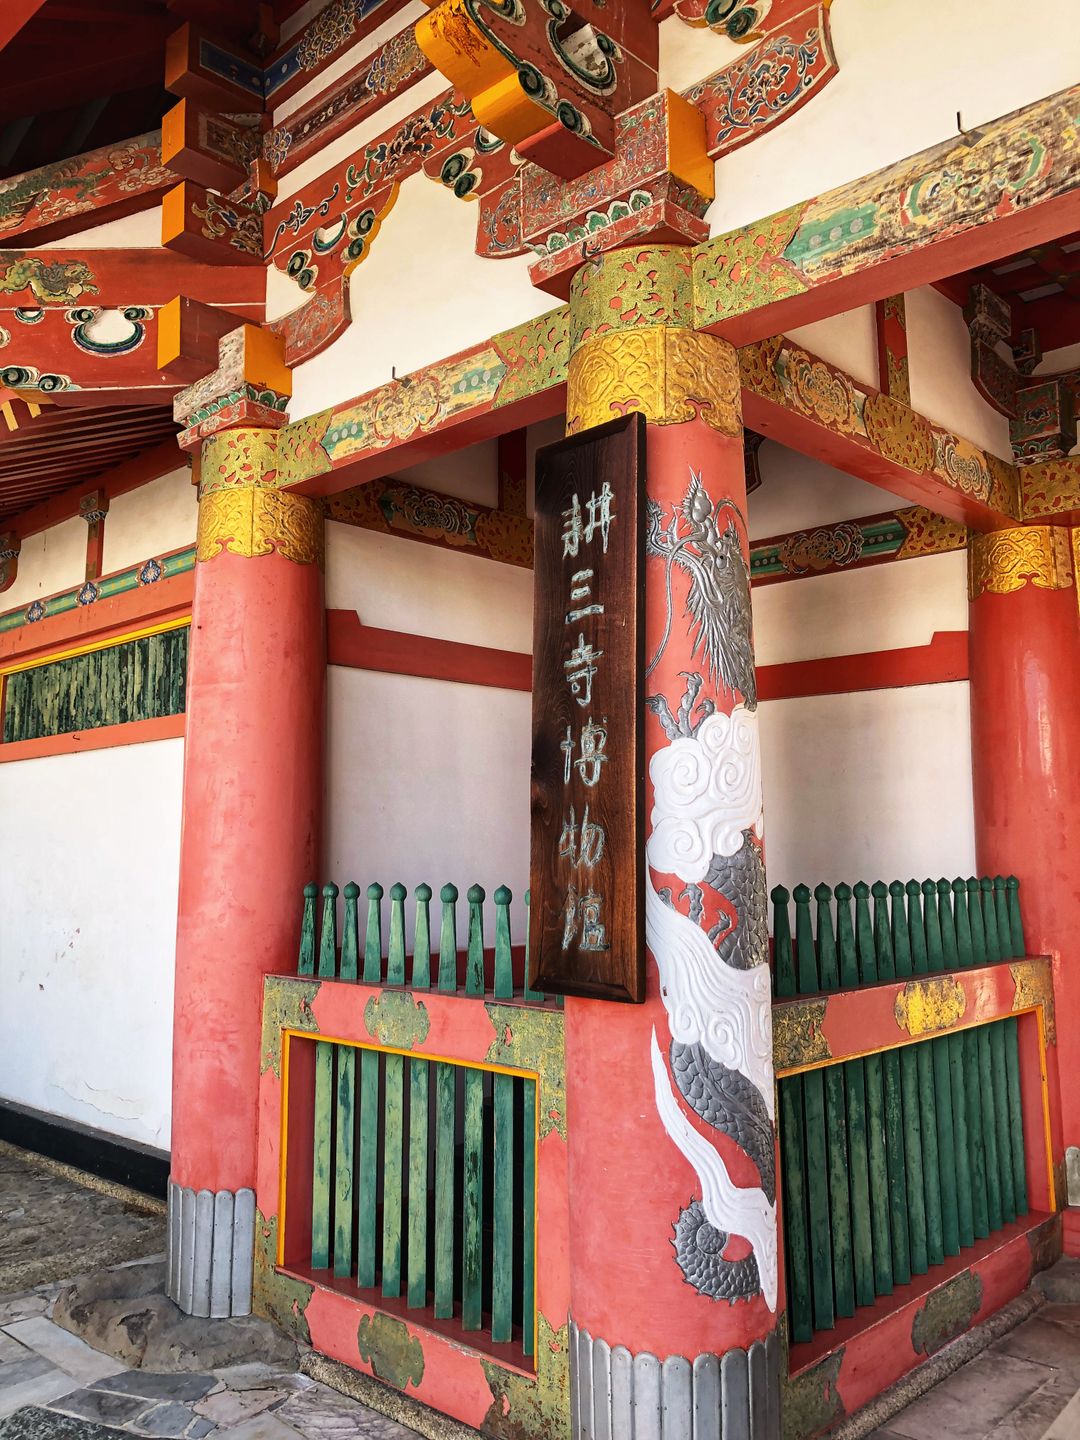 鮮豔的風格有別於日本普遍見到的寺廟。